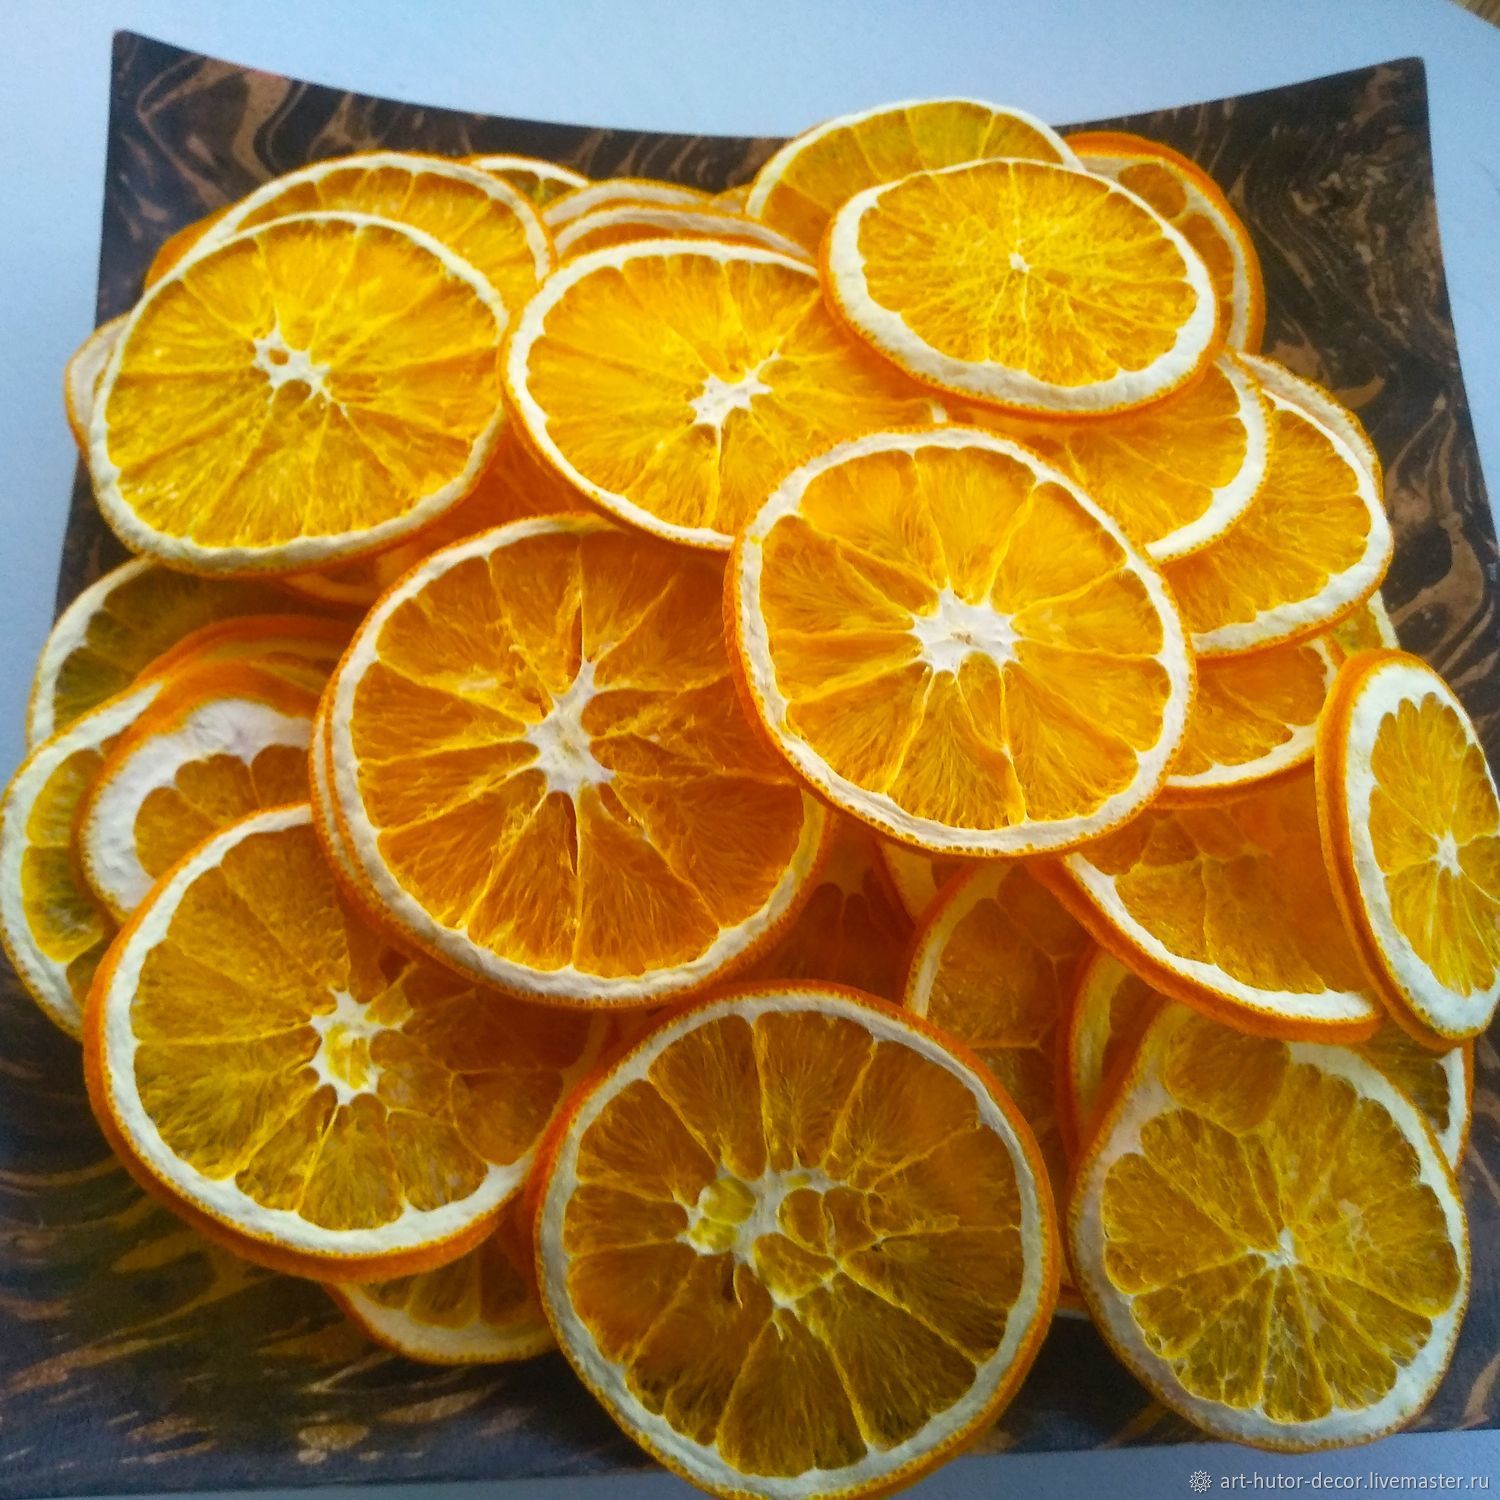 da46eac574735b05db00b89c56lk--materialy-dlya-tvorchestva-dekor-iz-apelsina-dolki-apelsina-s.jpg